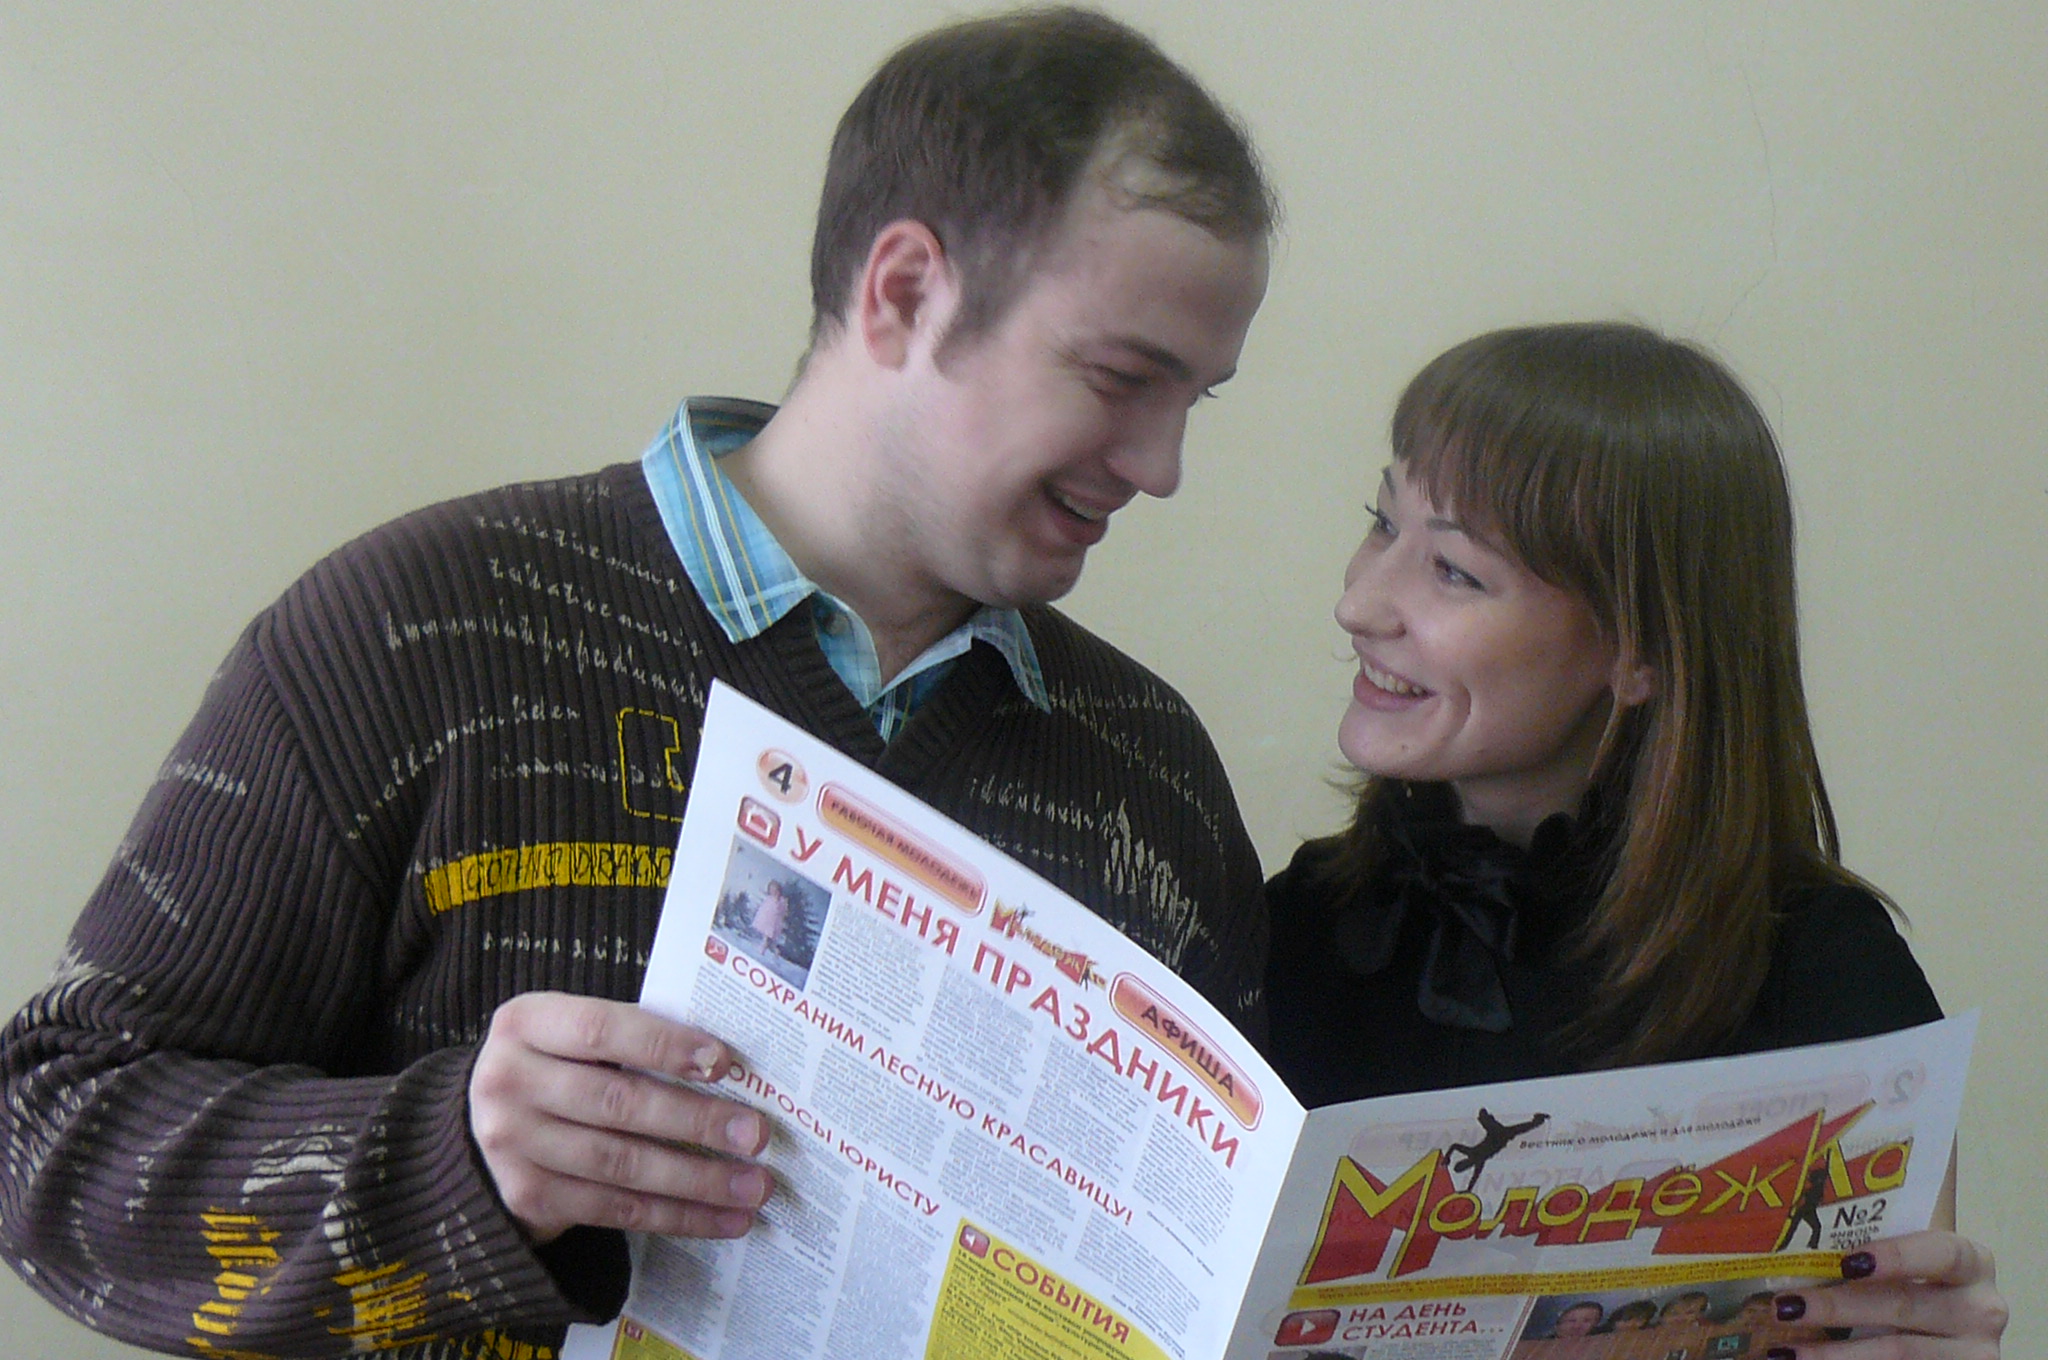 16:26 Вышел в свет второй номер молодежного вестника Калининского района г. Чебоксары «МолодежКа»: читают все!